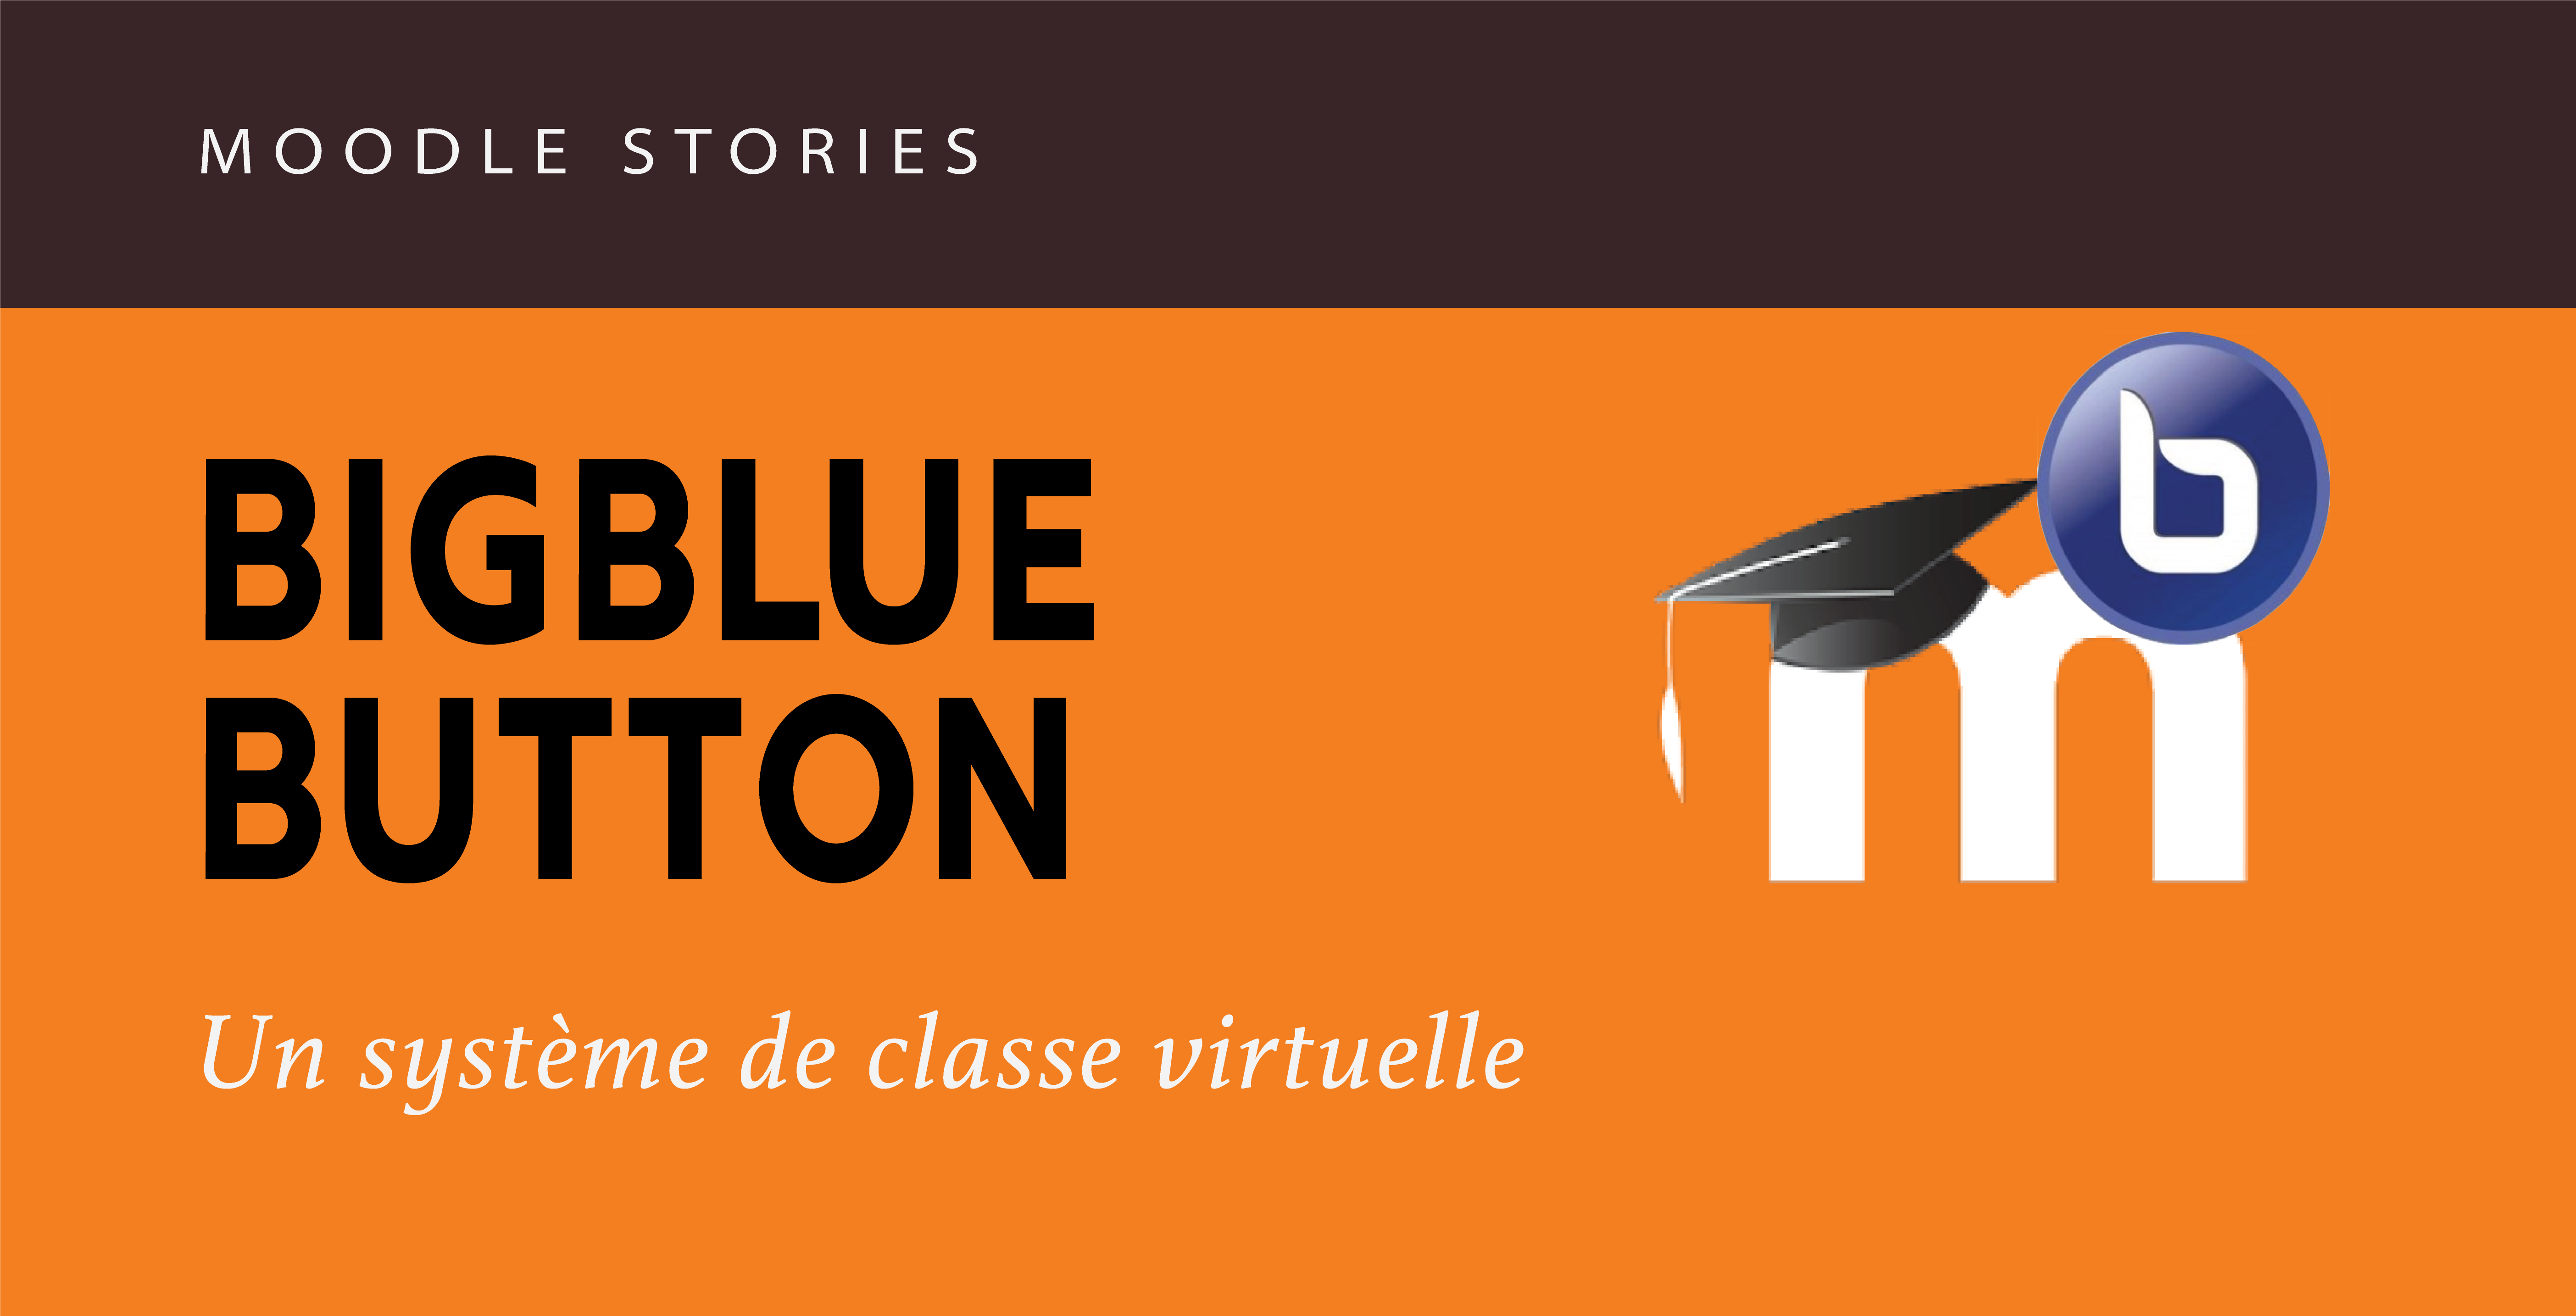 You are currently viewing Moodle stories : la classe virtuelle BigBlueButton intégrée dans Moodle [2022]